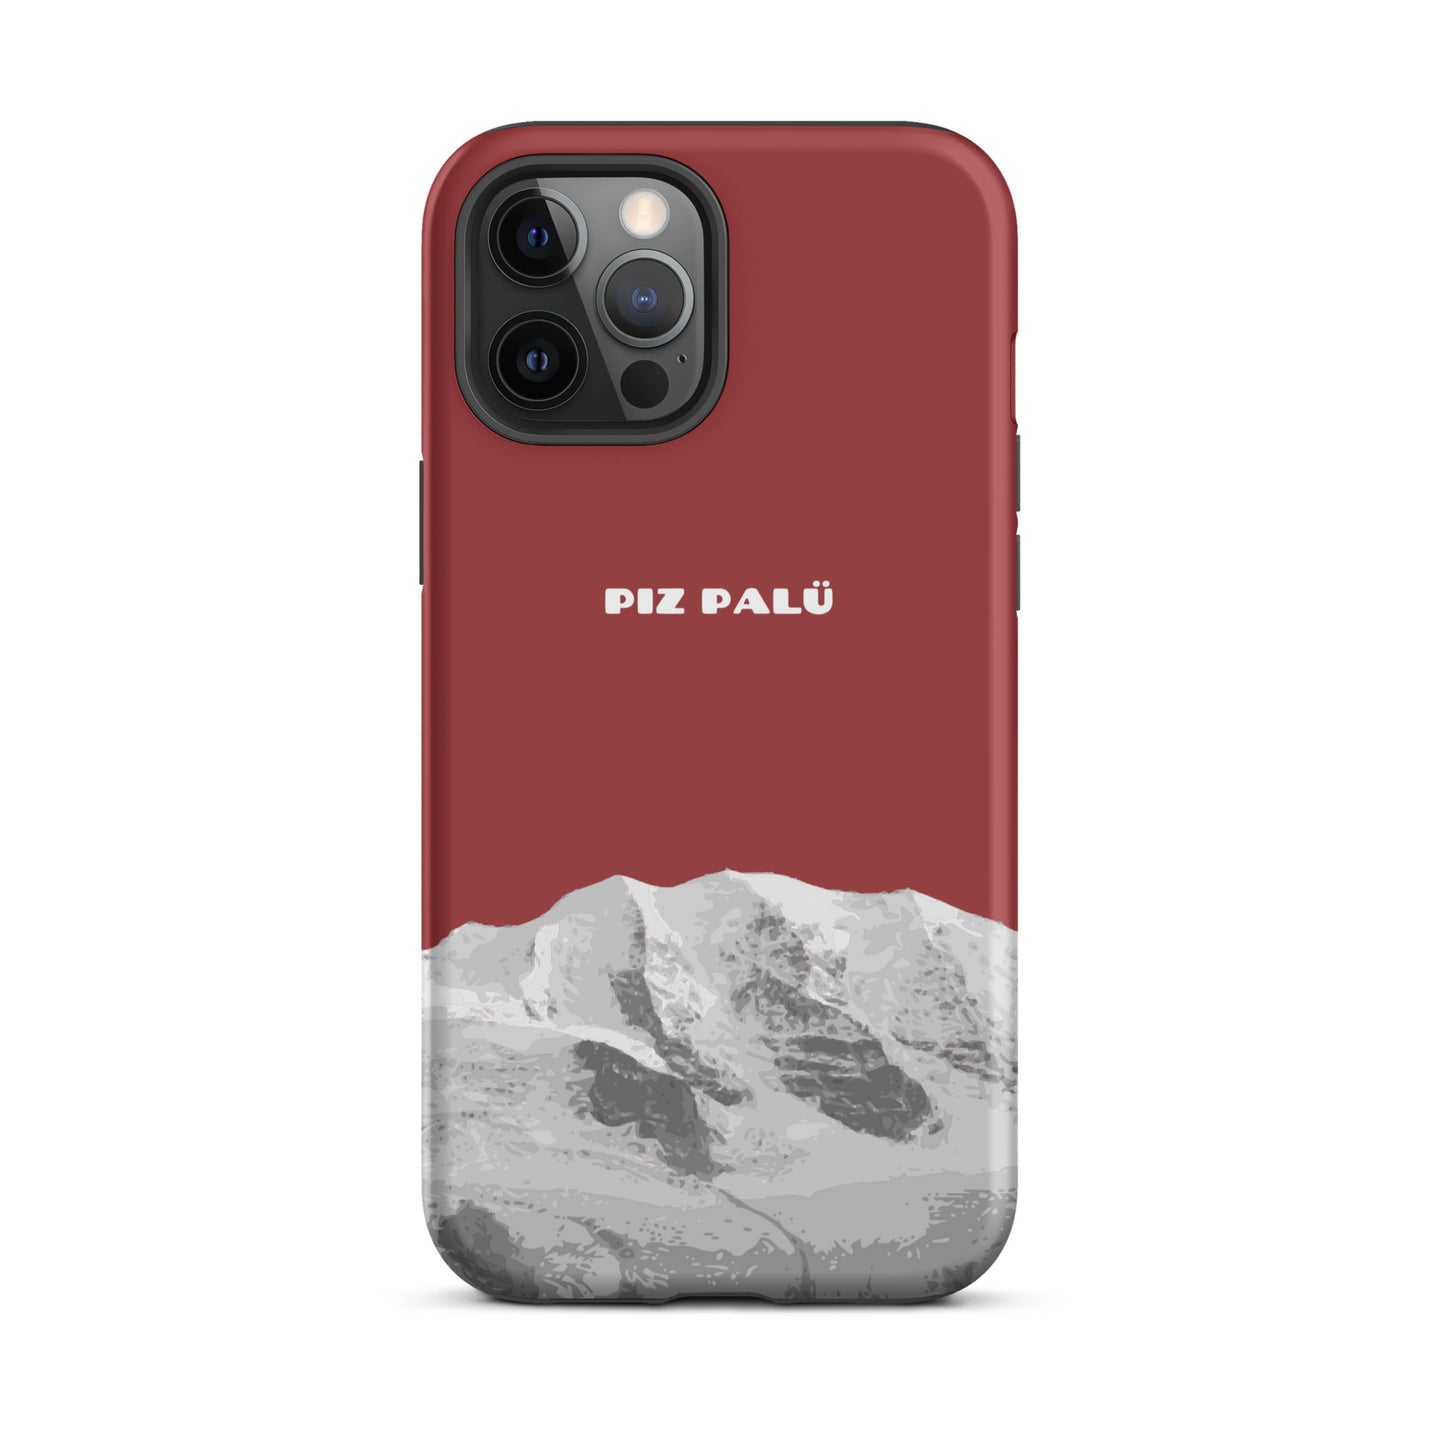 Hülle für das iPhone 12 Pro Max von Apple in der Farbe Pastellviolett, dass den Piz Palü in Graubünden zeigt.